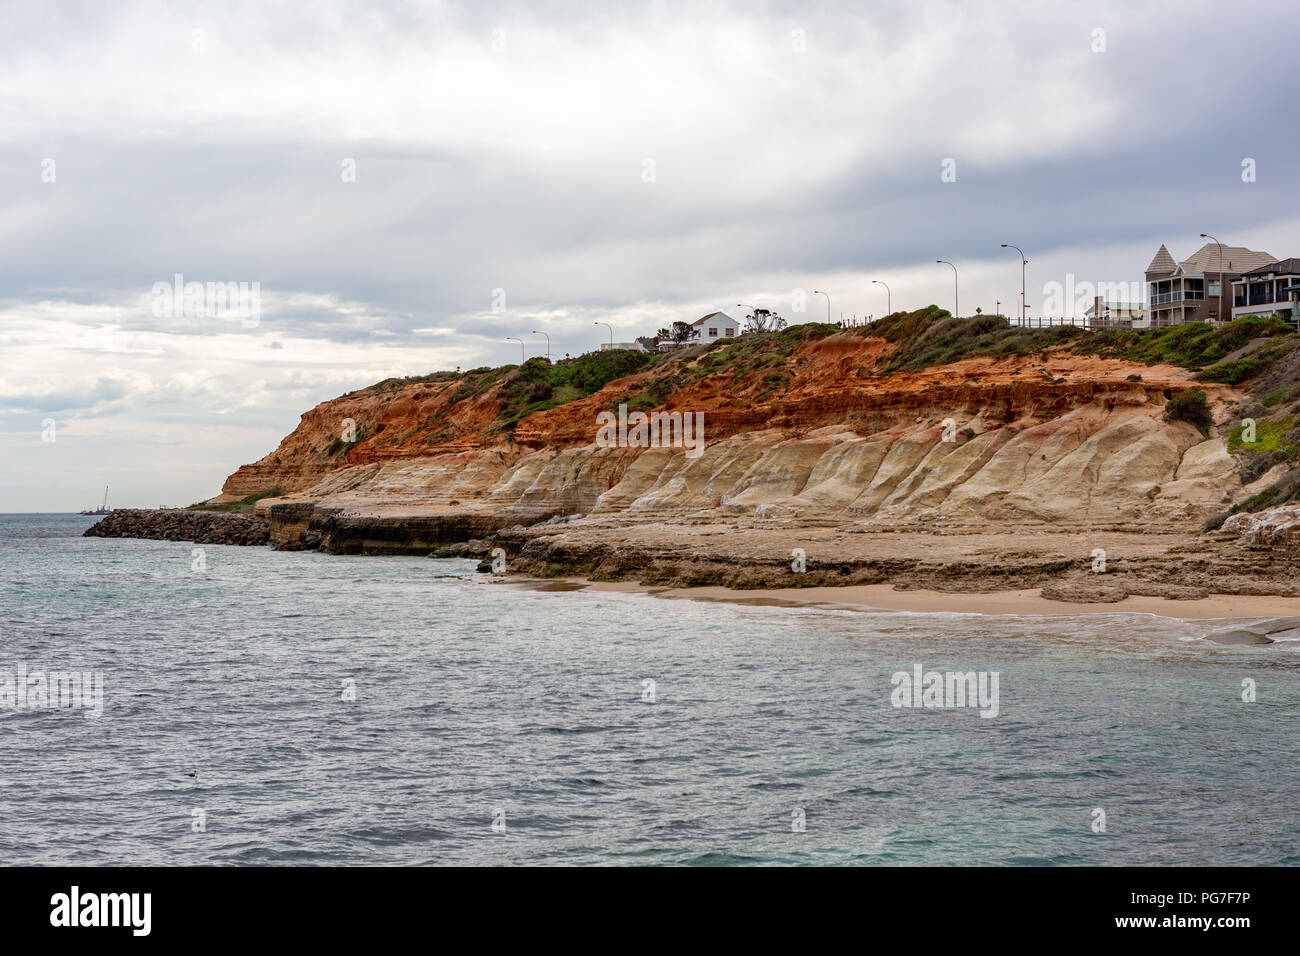 L'emblématique falaise de calcaire visages de la Port Noarlunga Beach Australie du Sud, le 23 août 2018 Banque D'Images